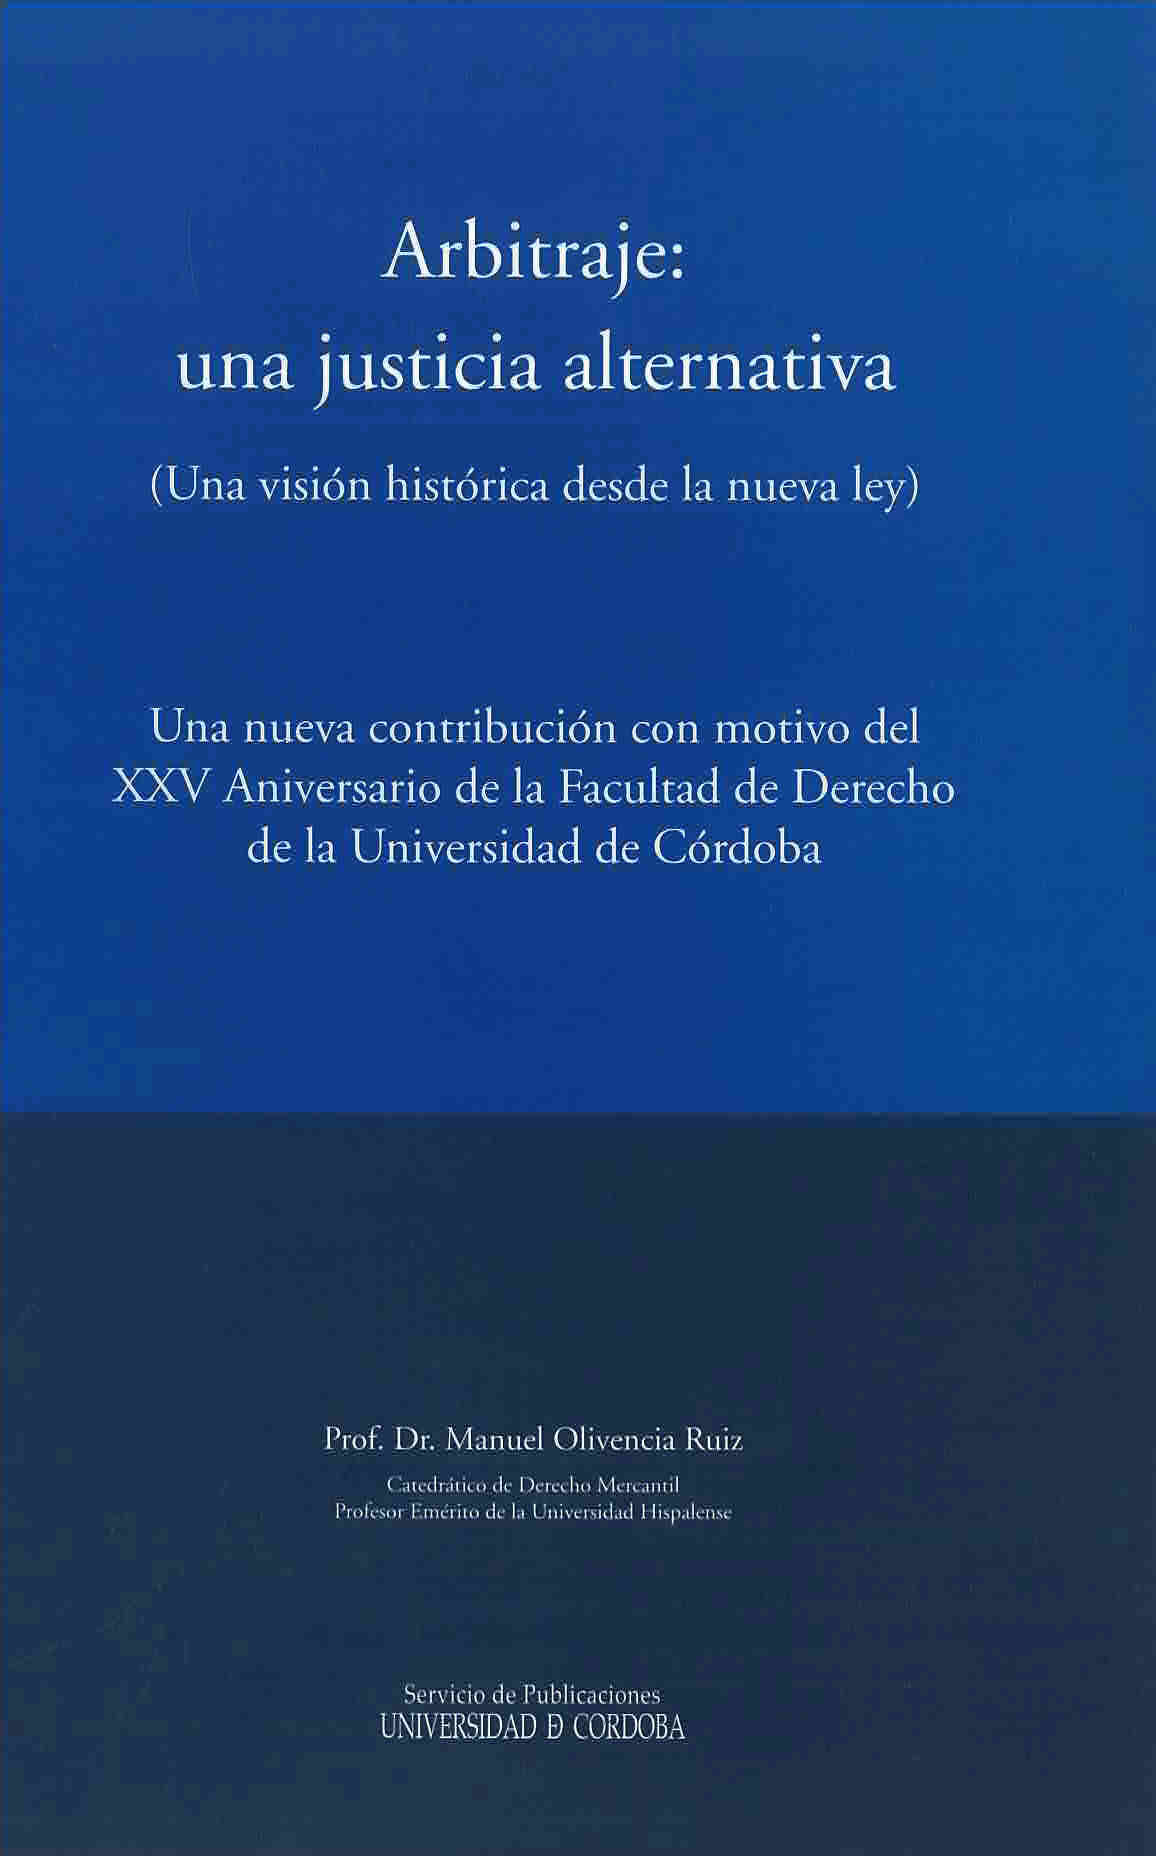 Arbitraje: una justicia alternativa (una visión histórica desde la nueva ley) Una nueva contribución con motivo del XXV Aniversario de la Facultad de Derecho de la Universidad de Córdoba